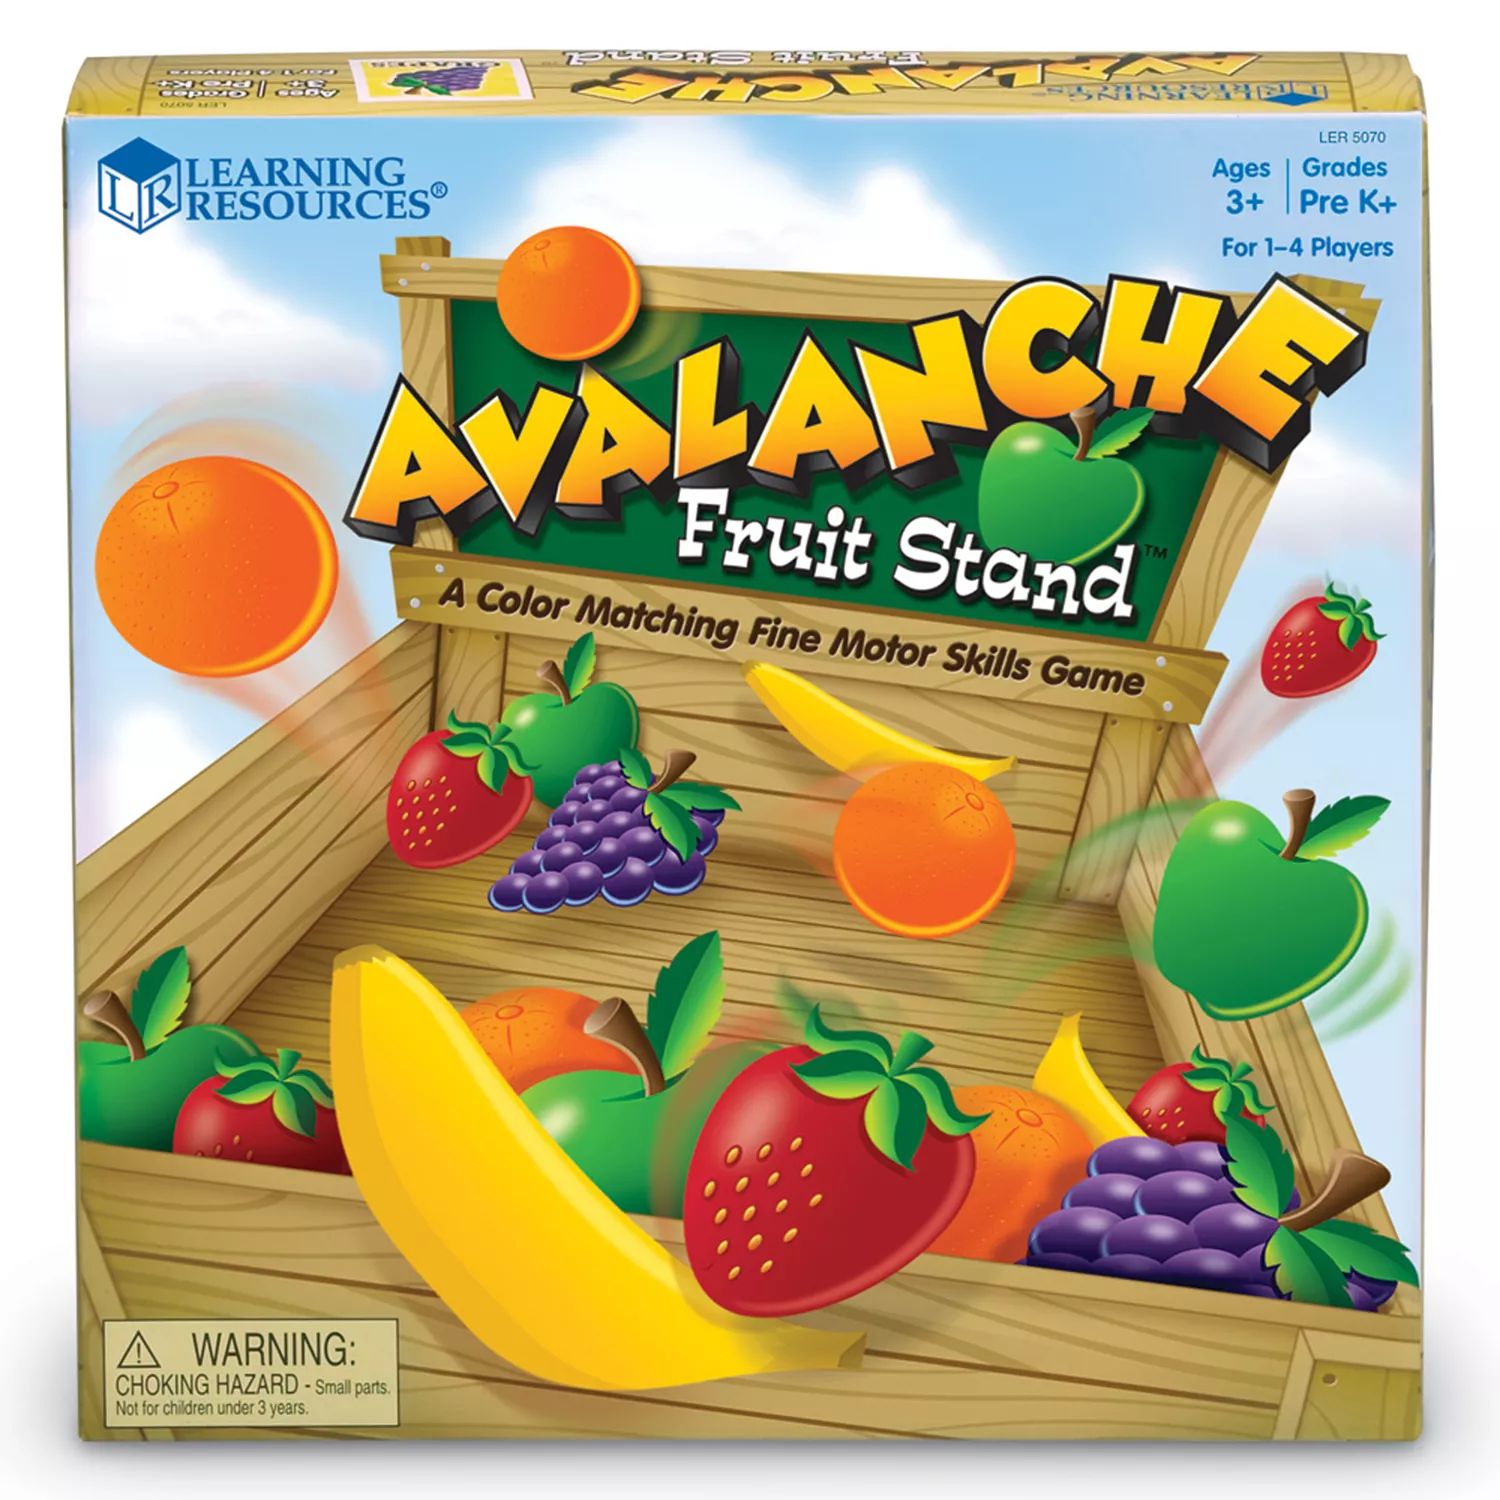 Игра Avalanche Fruit Stand от учебных ресурсов Learning Resources